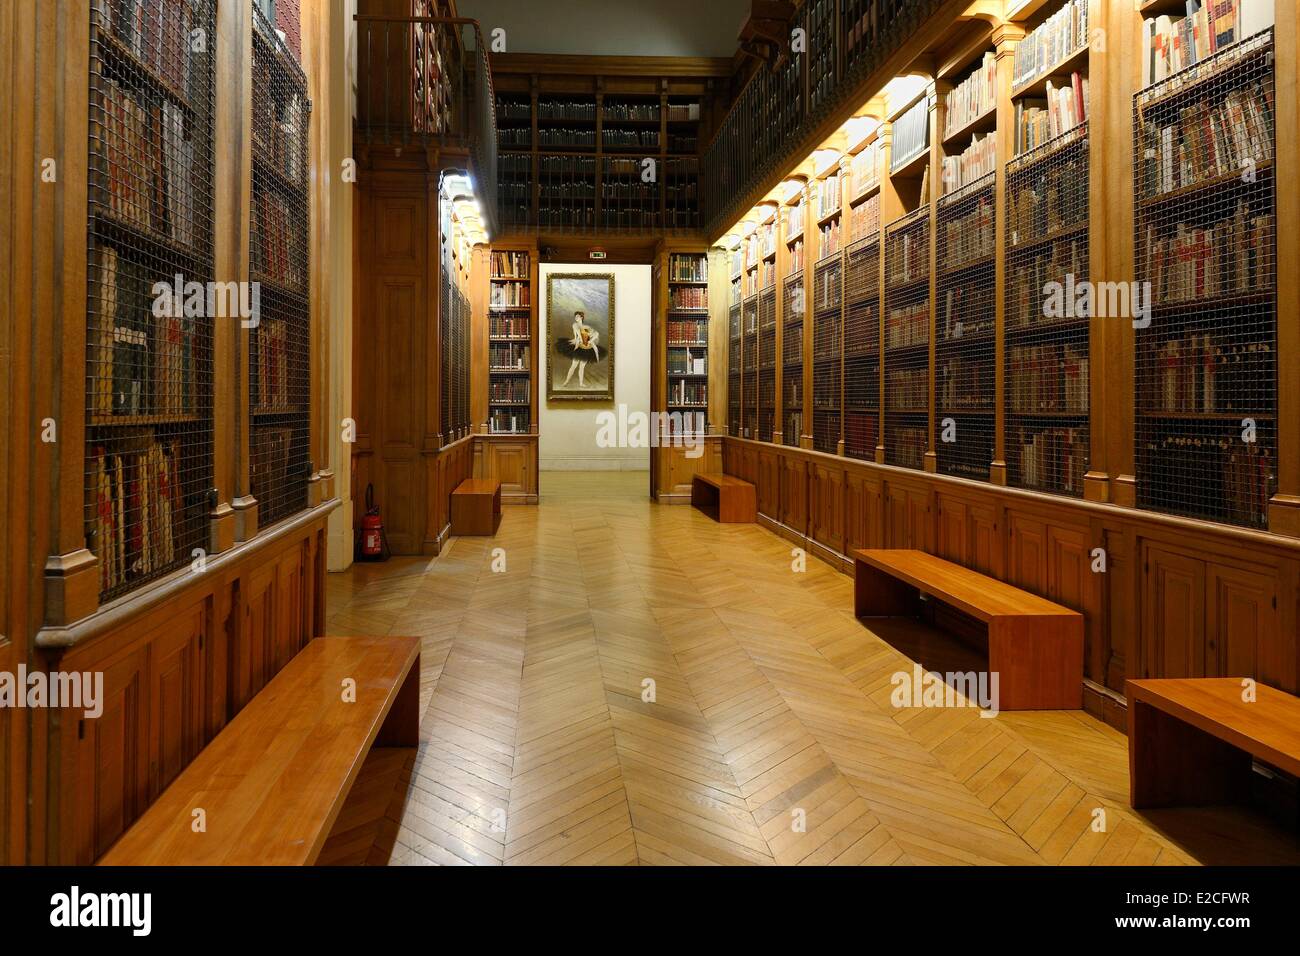 France, Paris, Bibliotheque-Musee de l'Opera National de Paris is a ...